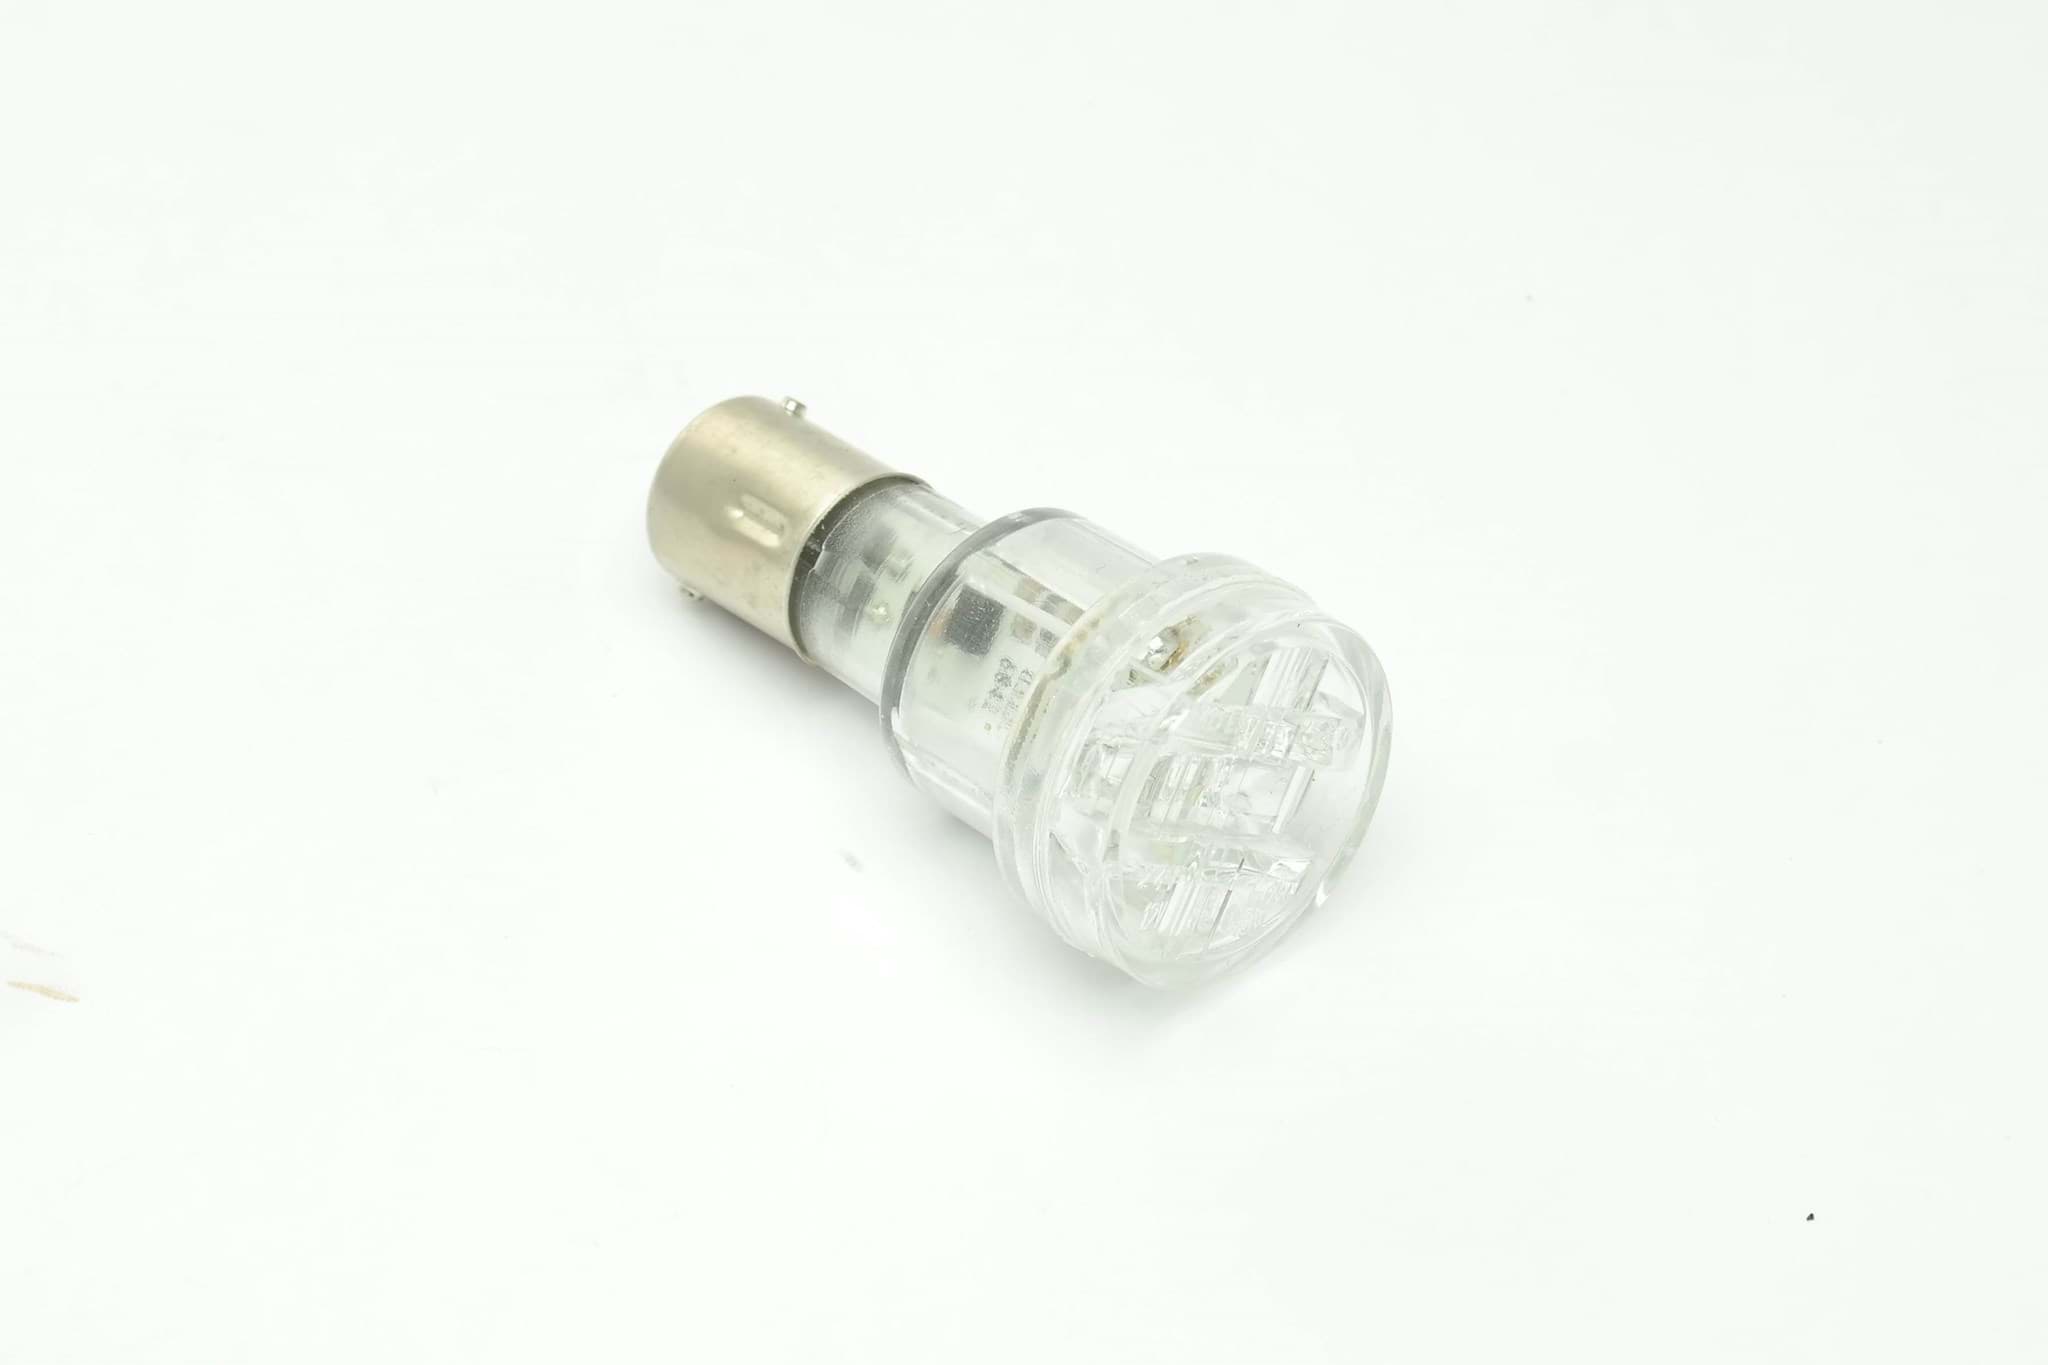 Picture of LED Standlicht für Europoint II orig Aspöck  12-1560-001 mit Zulassung R E9 02.25497